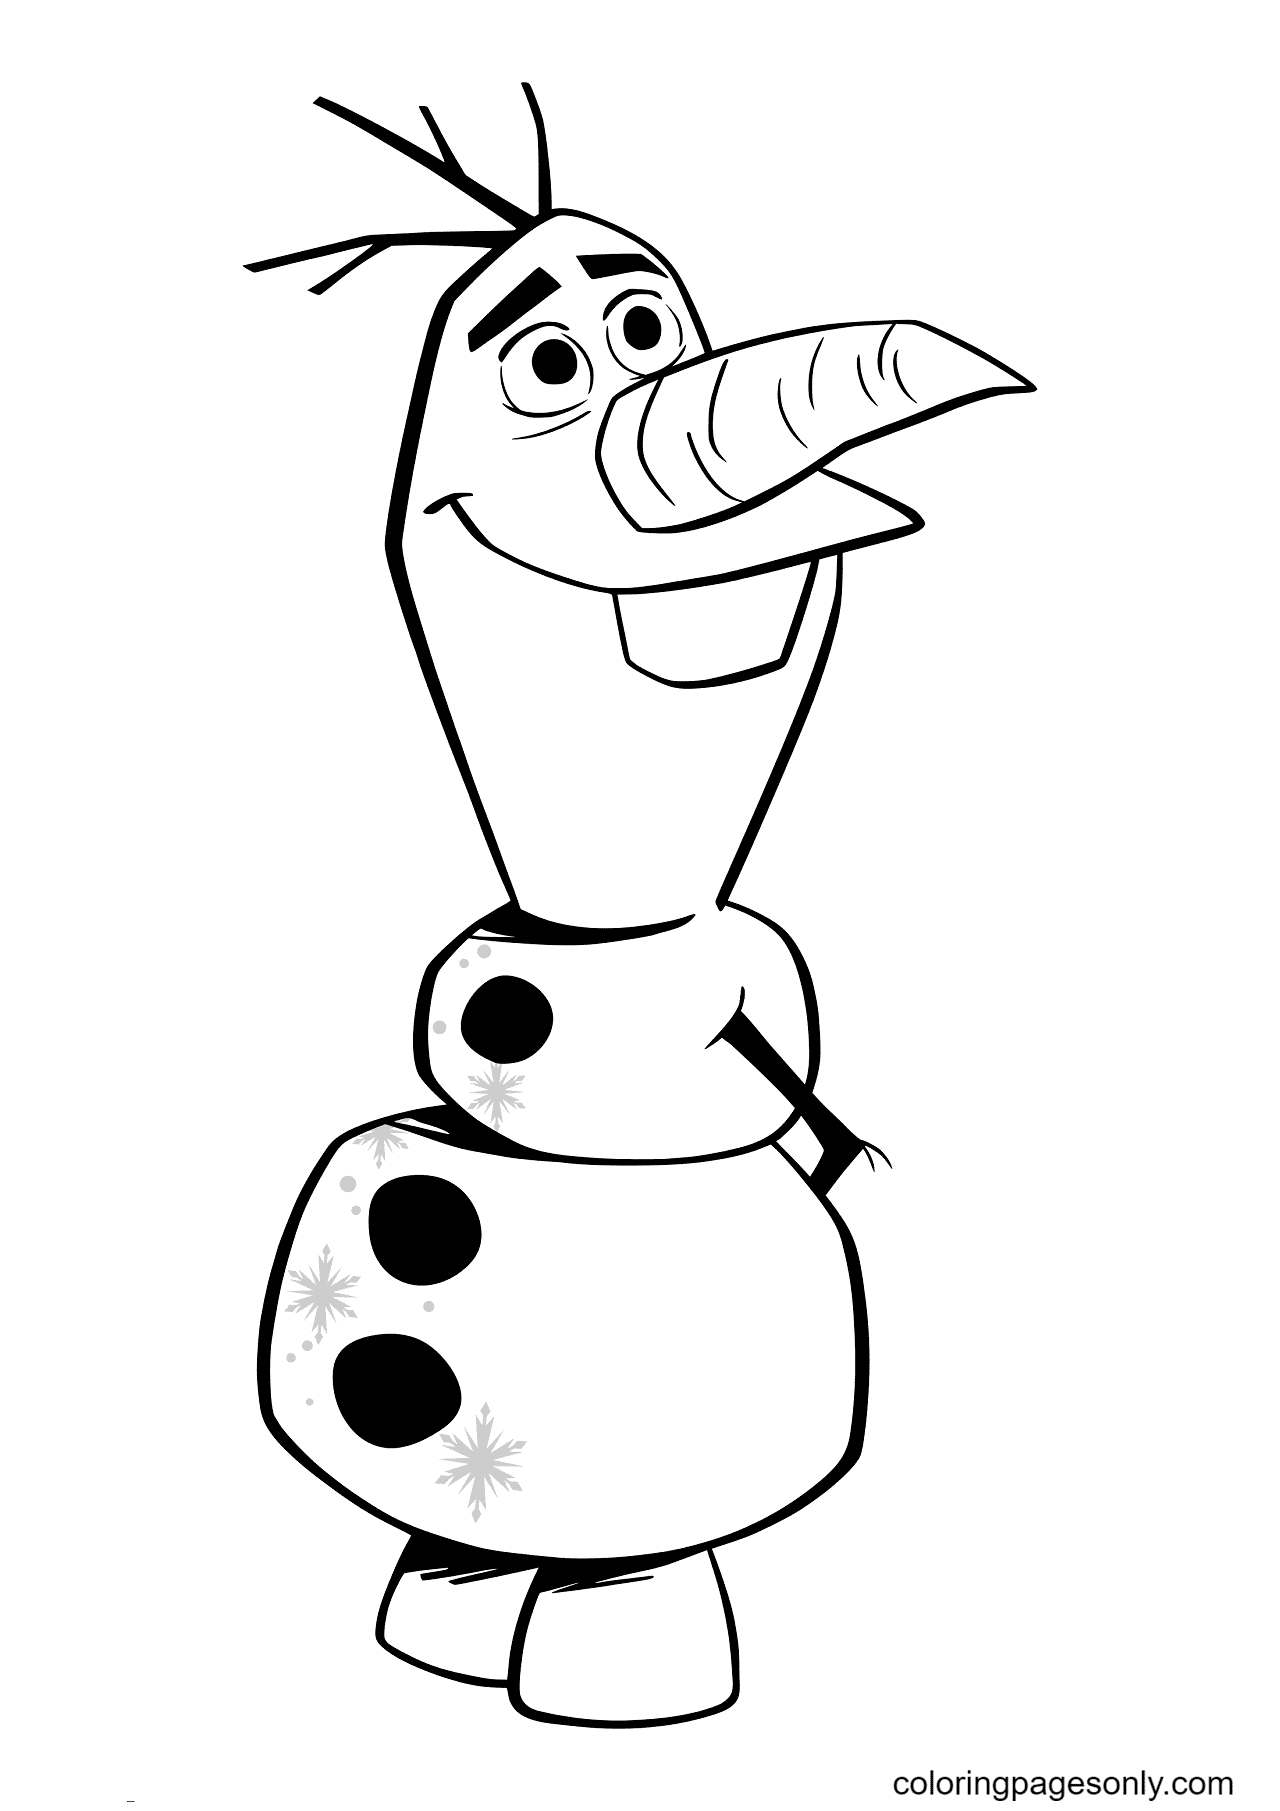 Disney Frozen Olaf da Olaf